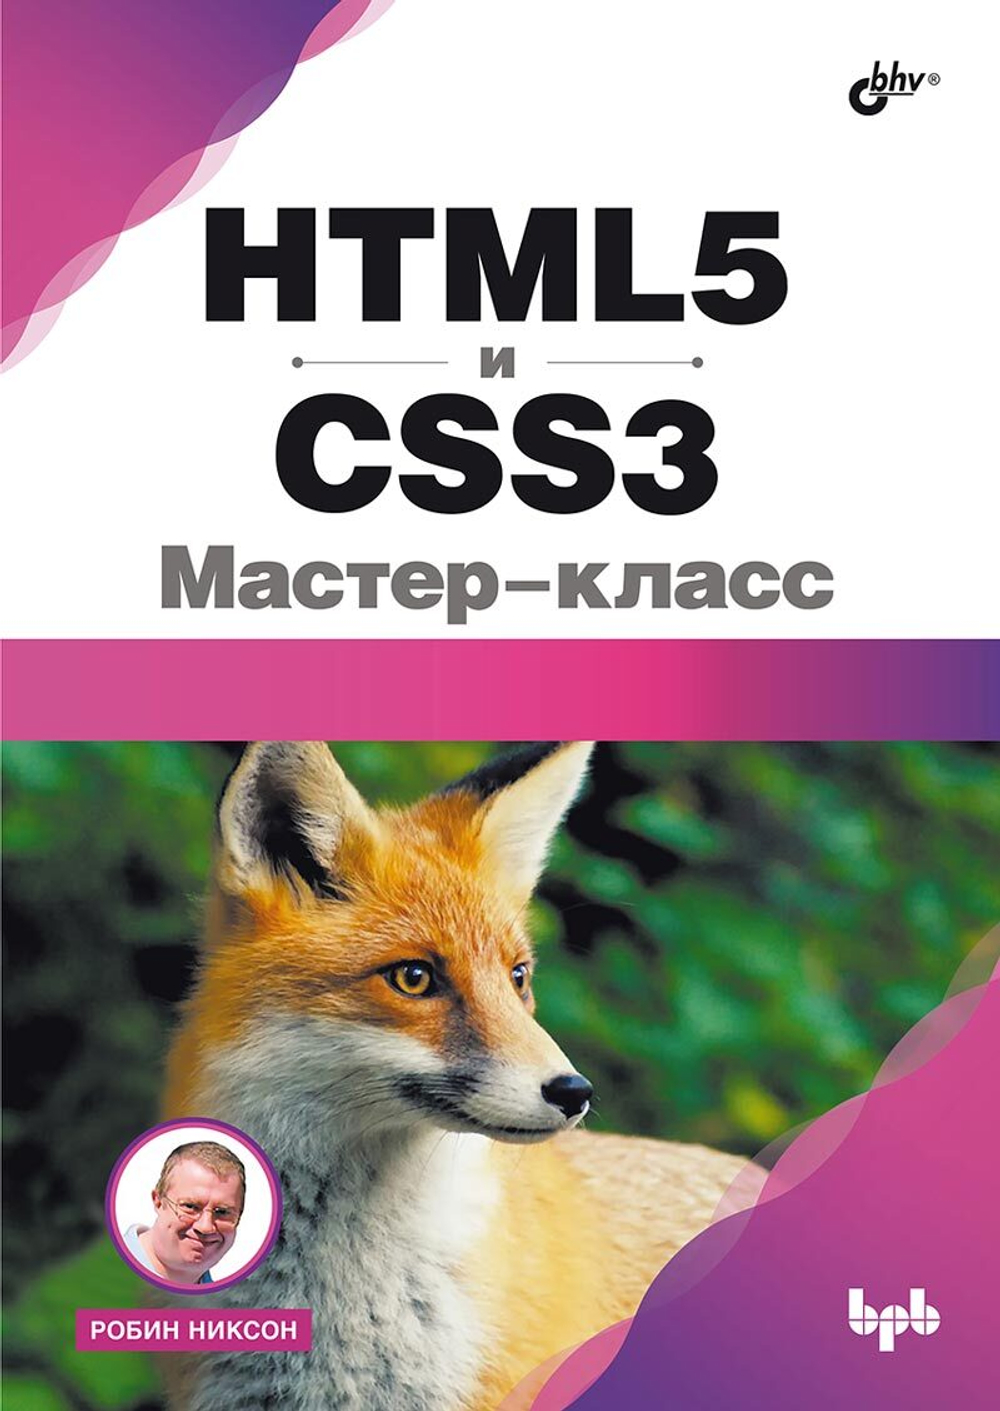 Книга: Никсон Р. "HTML5 и CSS3. Мастер-класс"